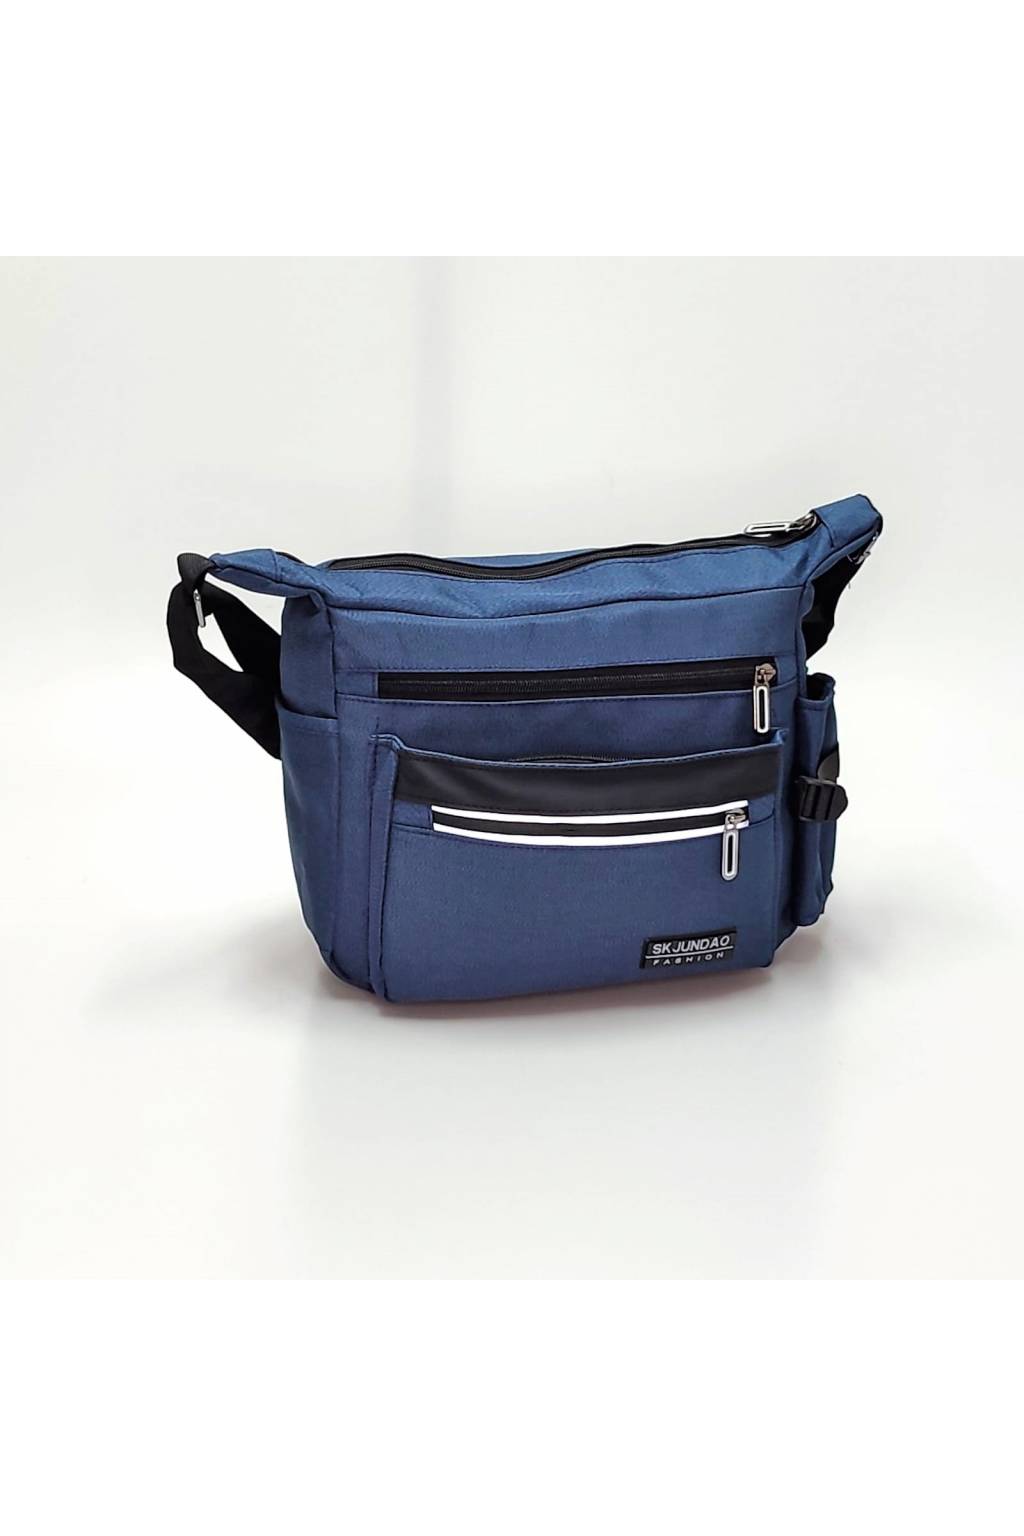 Pánska crossbody taška 7803 modrá www.kabelky vypredaj (6)